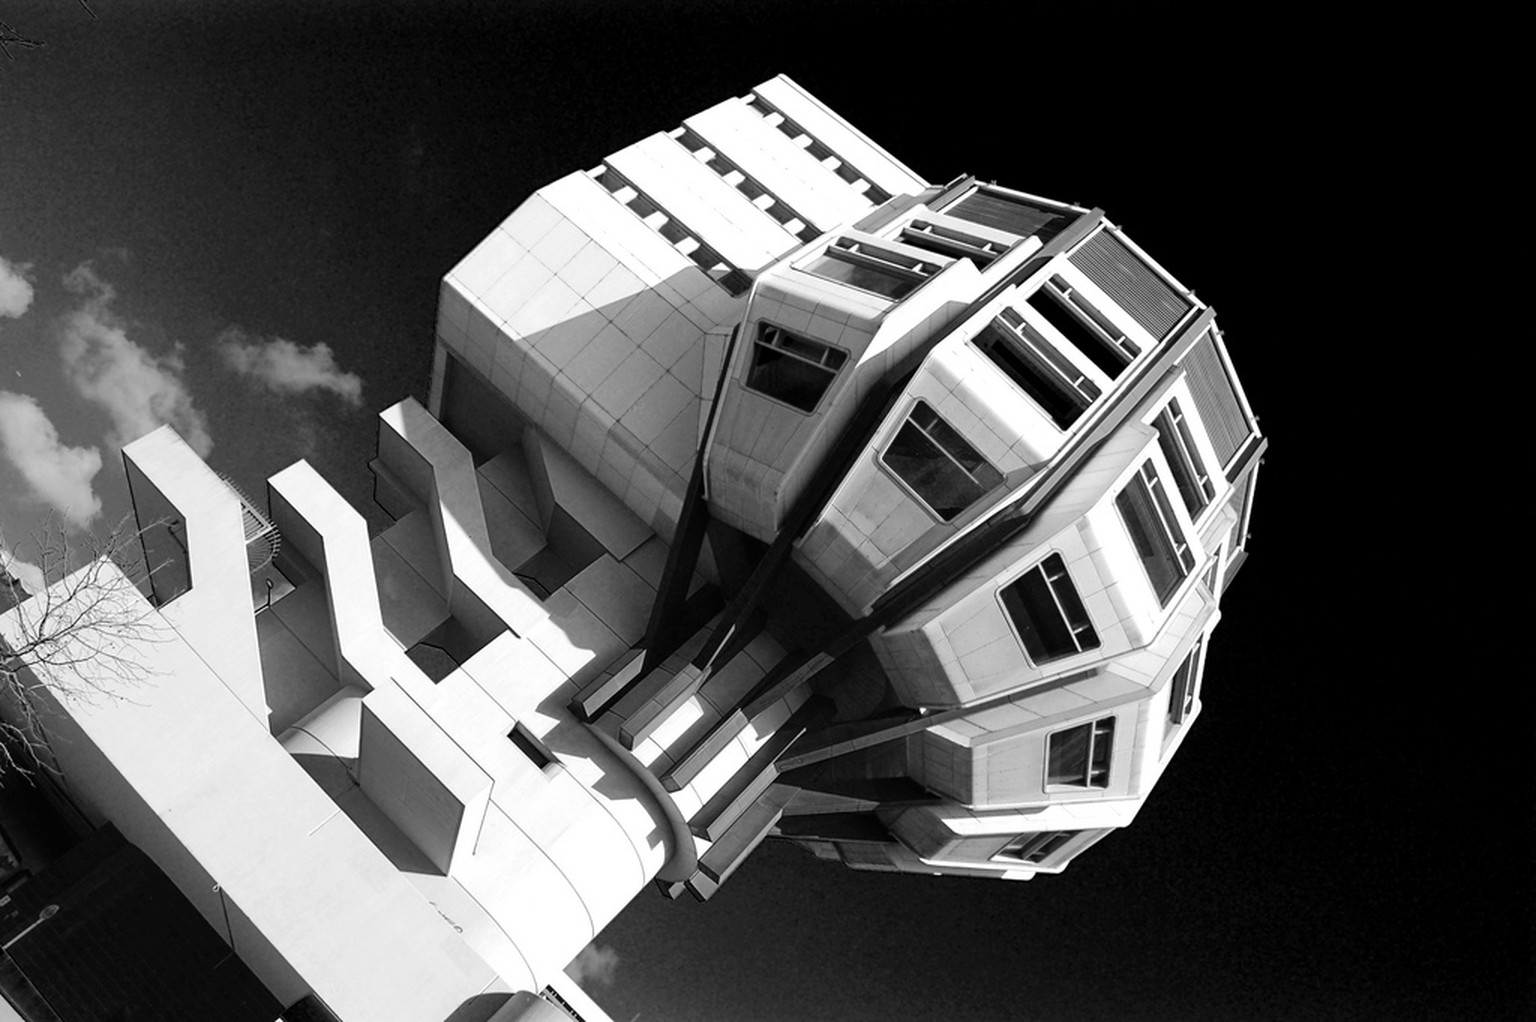 Bierpinsel Berlin Steglitz Architektur Poparchitektur futuristisch brutalismus retro verkauf
https://de.wikipedia.org/wiki/Bierpinsel